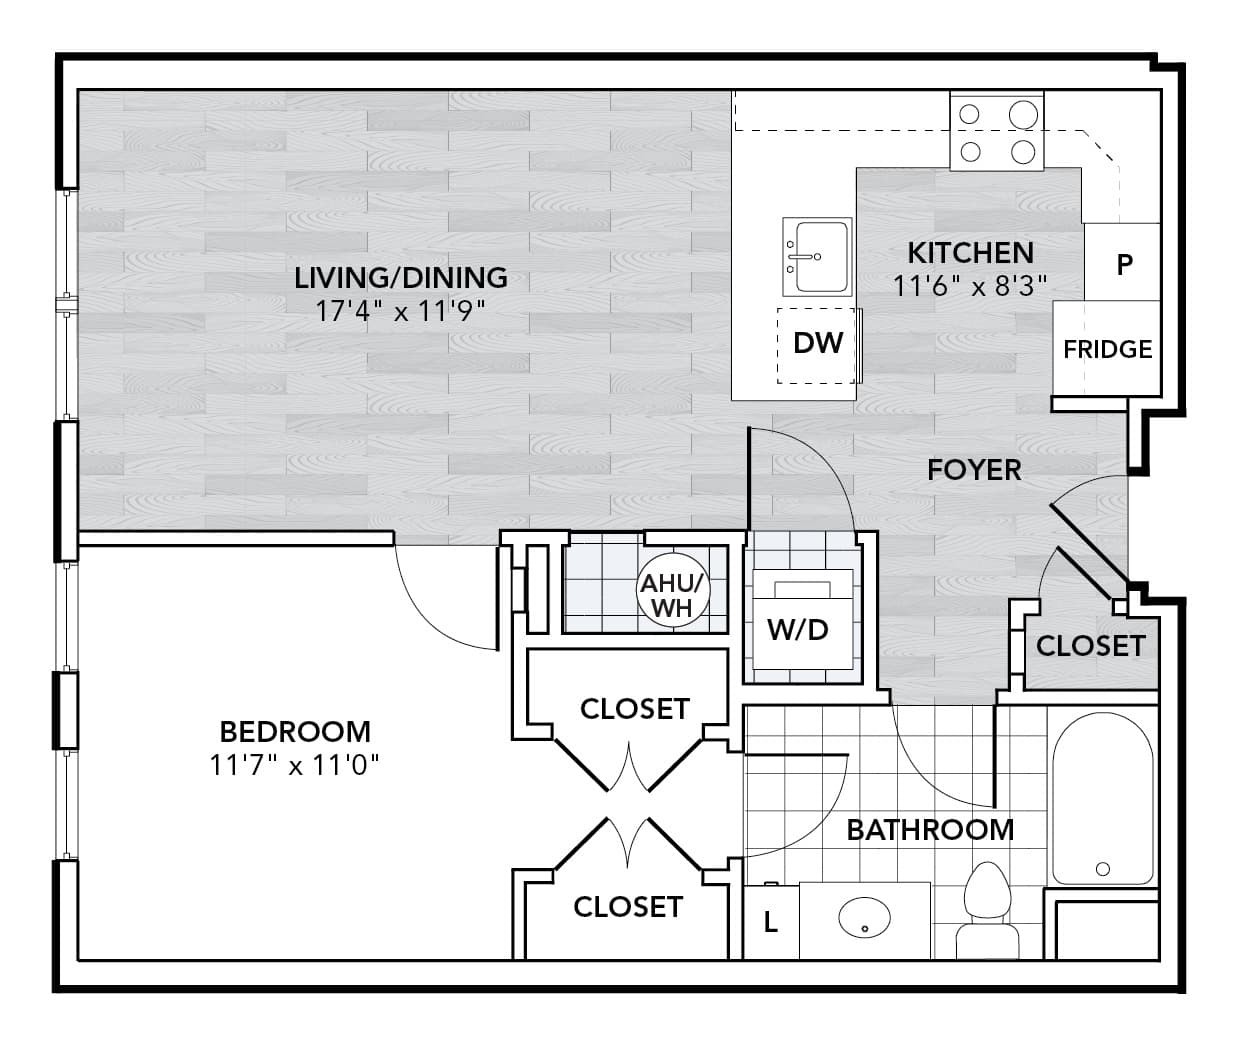 View Chestnut Square Apartment Floor Plans Studios, 1, 2